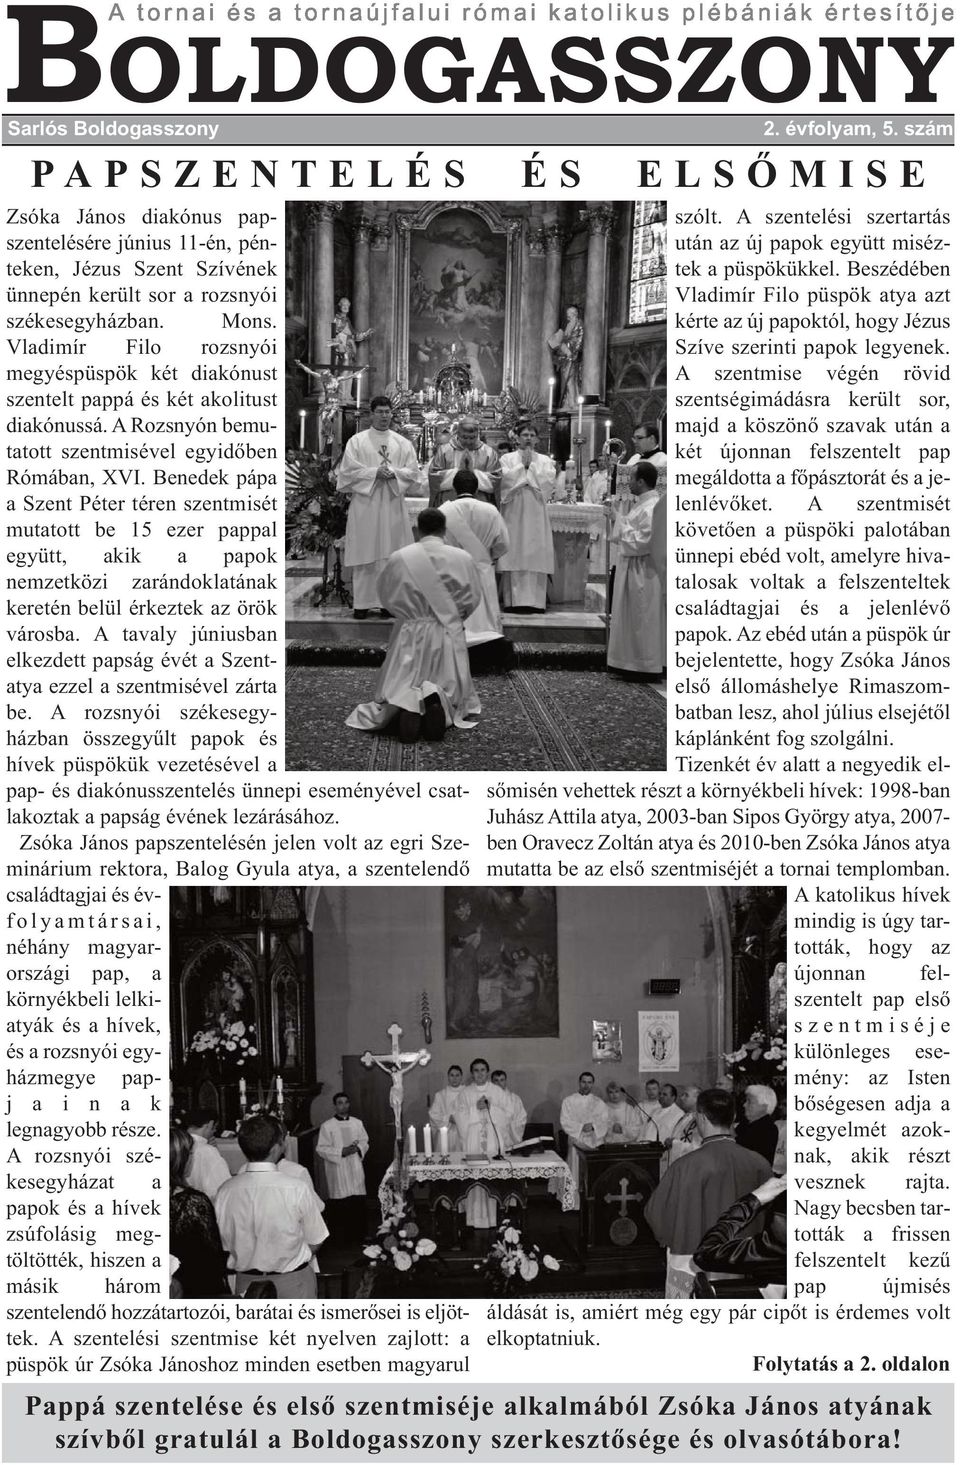 Vladimír Filo rozsnyói megyéspüspök két diakónust szentelt pappá és két akolitust diakónussá. A Rozsnyón bemutatott szentmisével egyidőben Rómában, XVI.